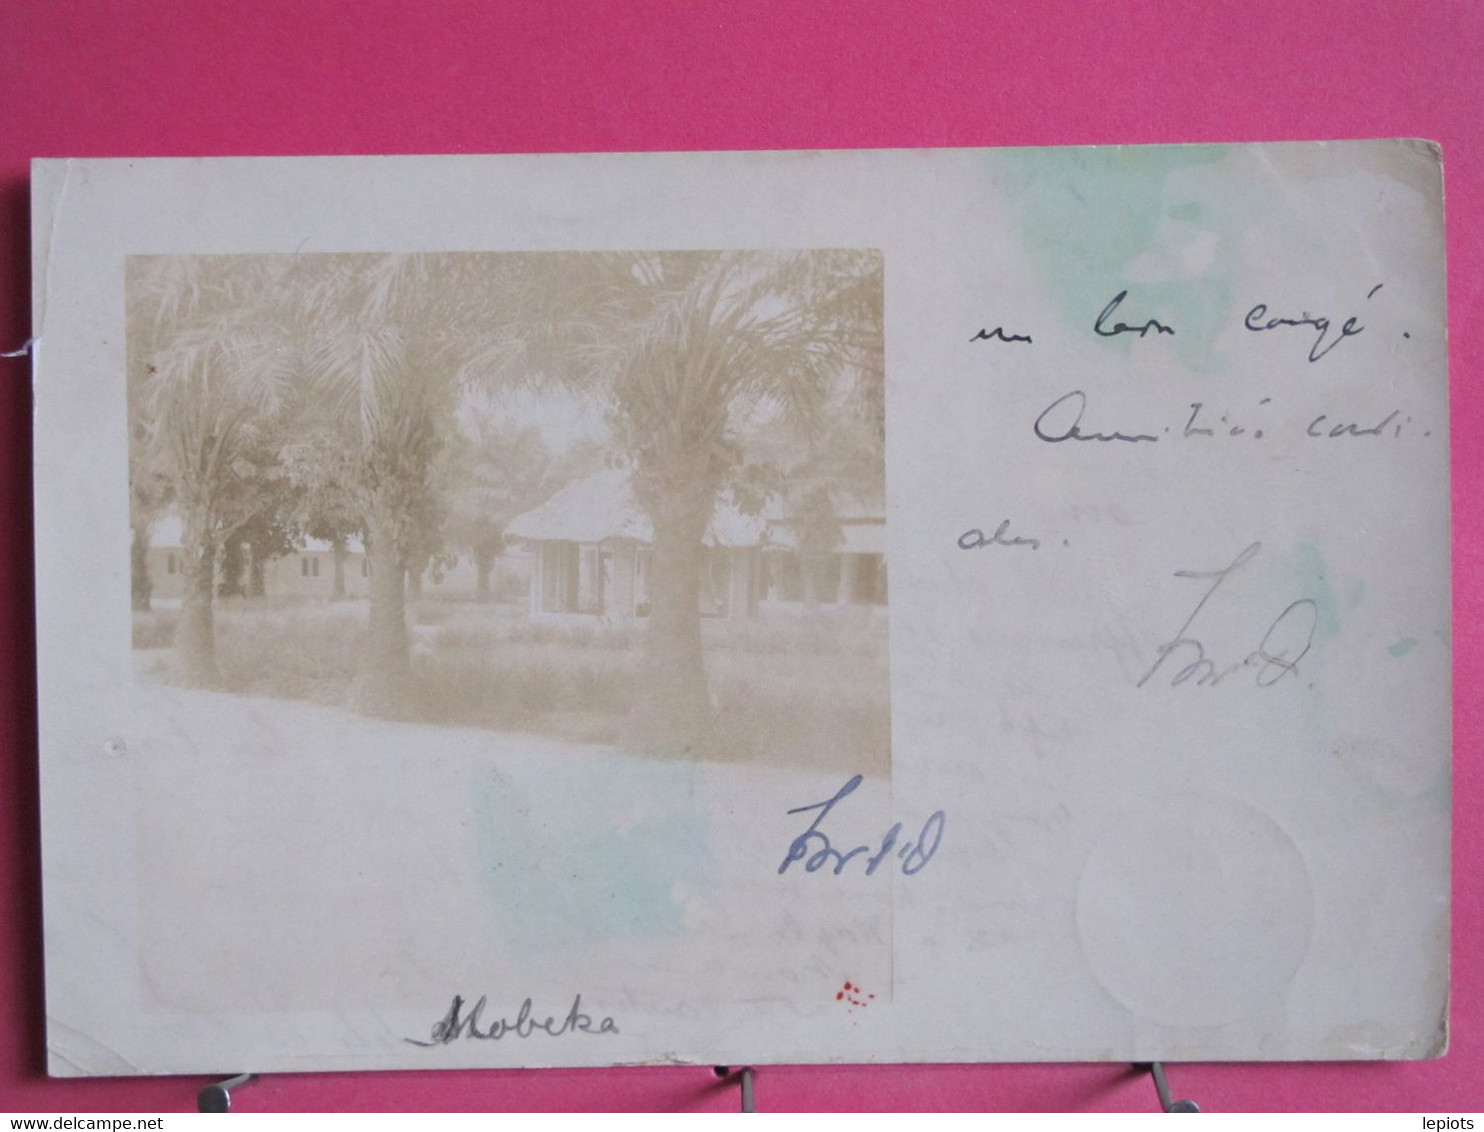 Visuel Très Peu Courant - Congo - Mobeka - Carte Photo D'une Maison - Oblitérations Kinshasa & Brazaville Au Verso -1911 - Kinshasa - Léopoldville